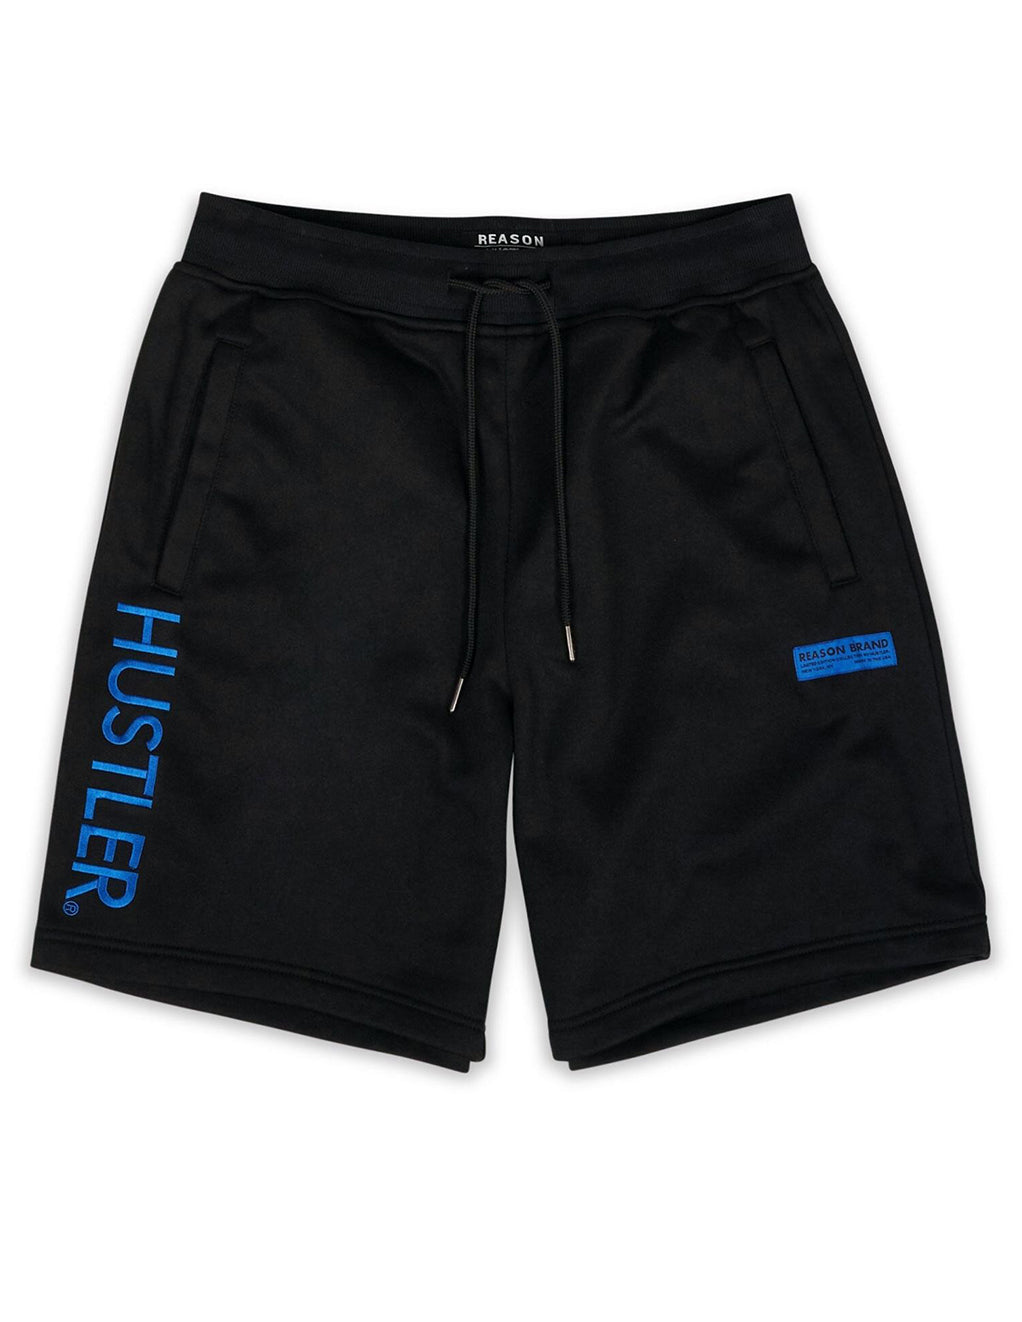 HUSTLER® Define Shorts- Front